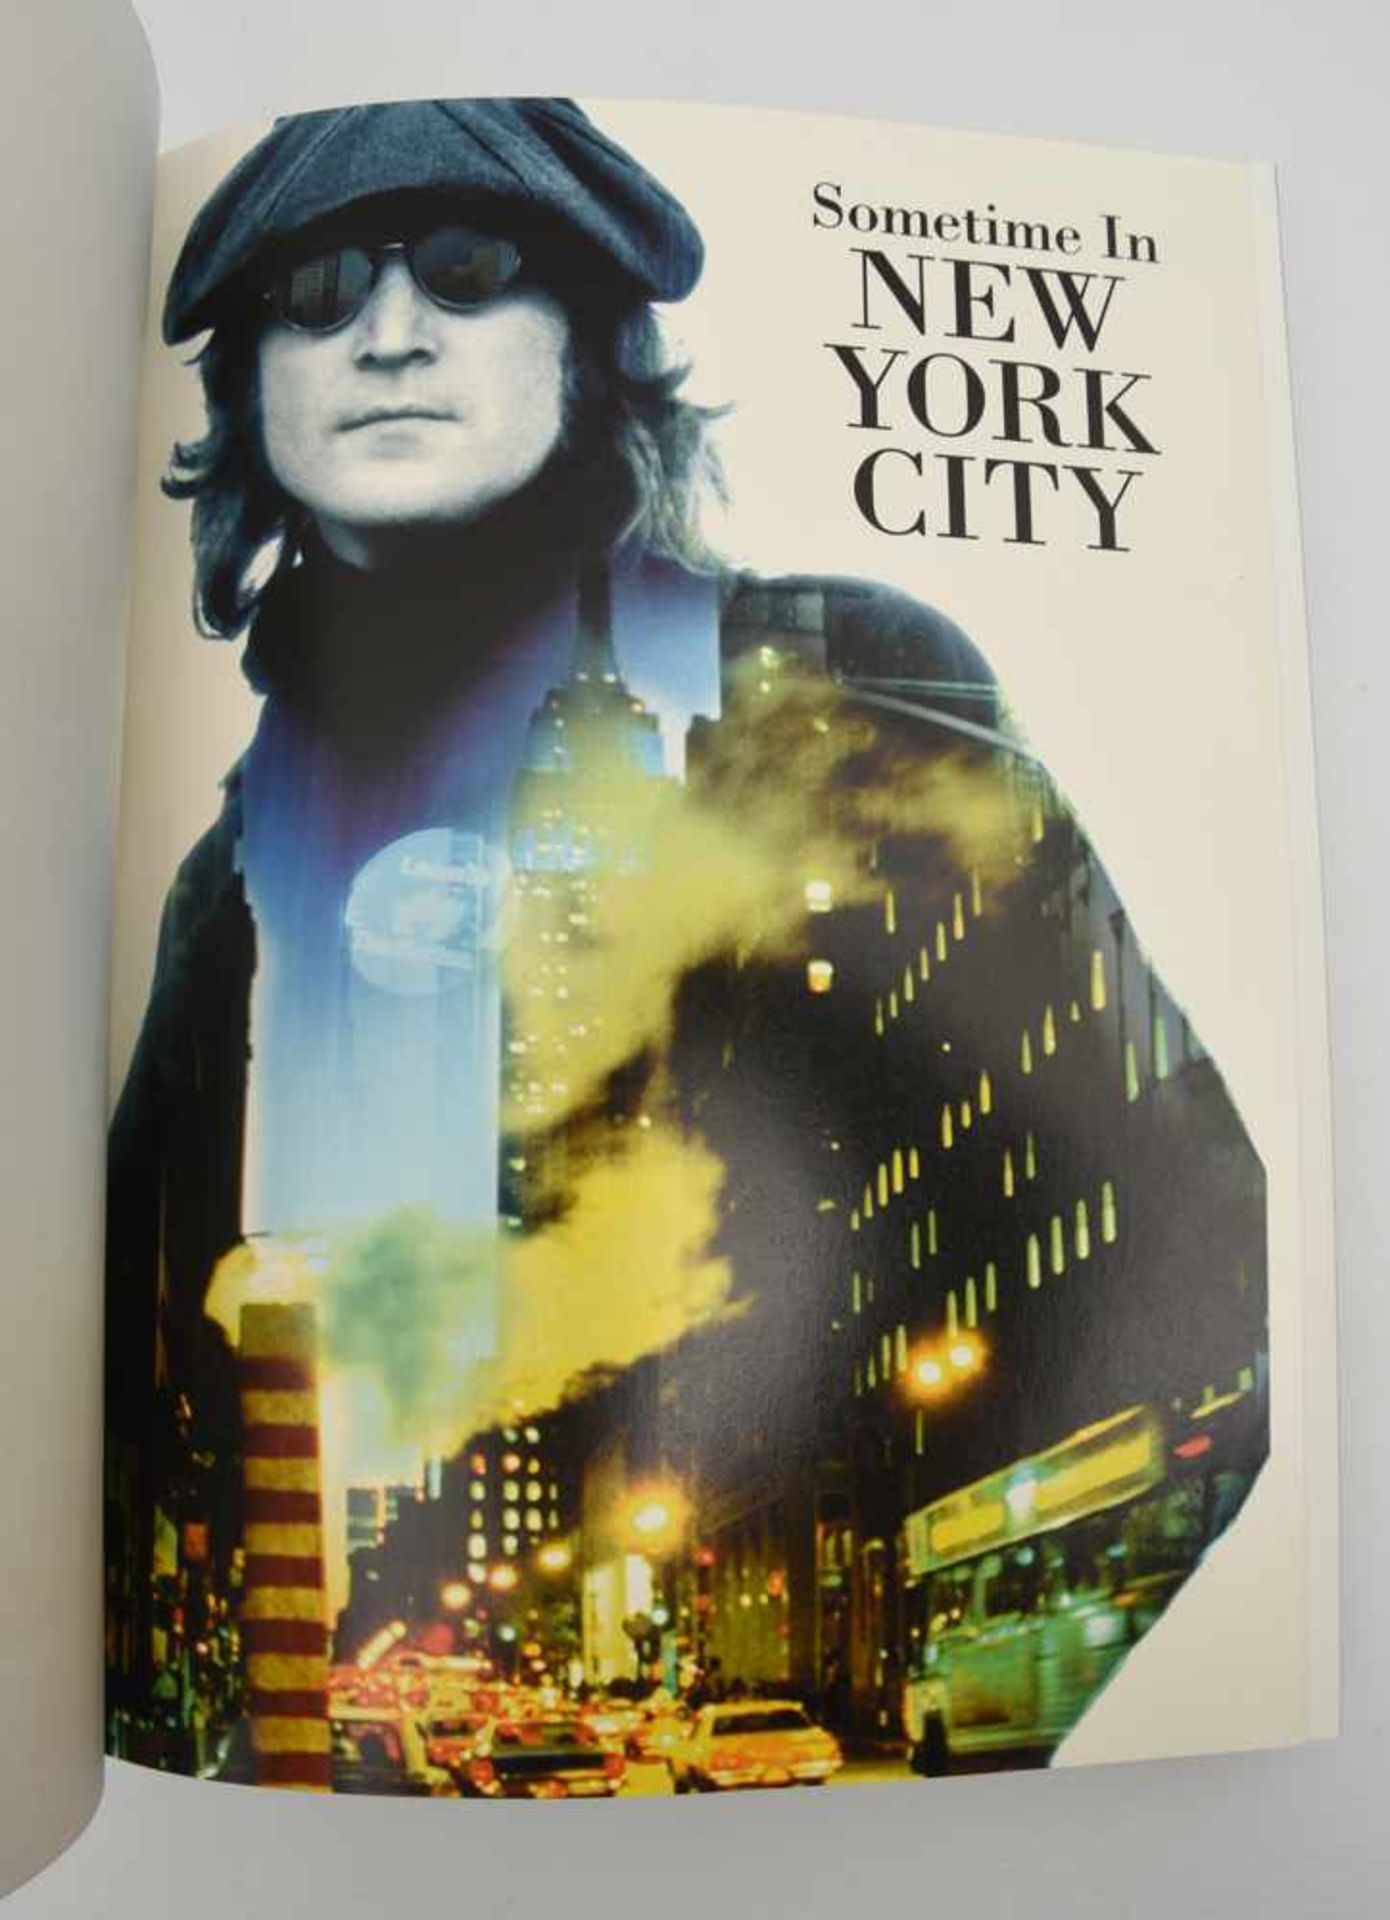 THE BEATLES-"SOMETIME IN NEW YORK CITY": gebundene Ausgabe, limitierte signierte Ausgabe 1995 Auf - Bild 5 aus 8